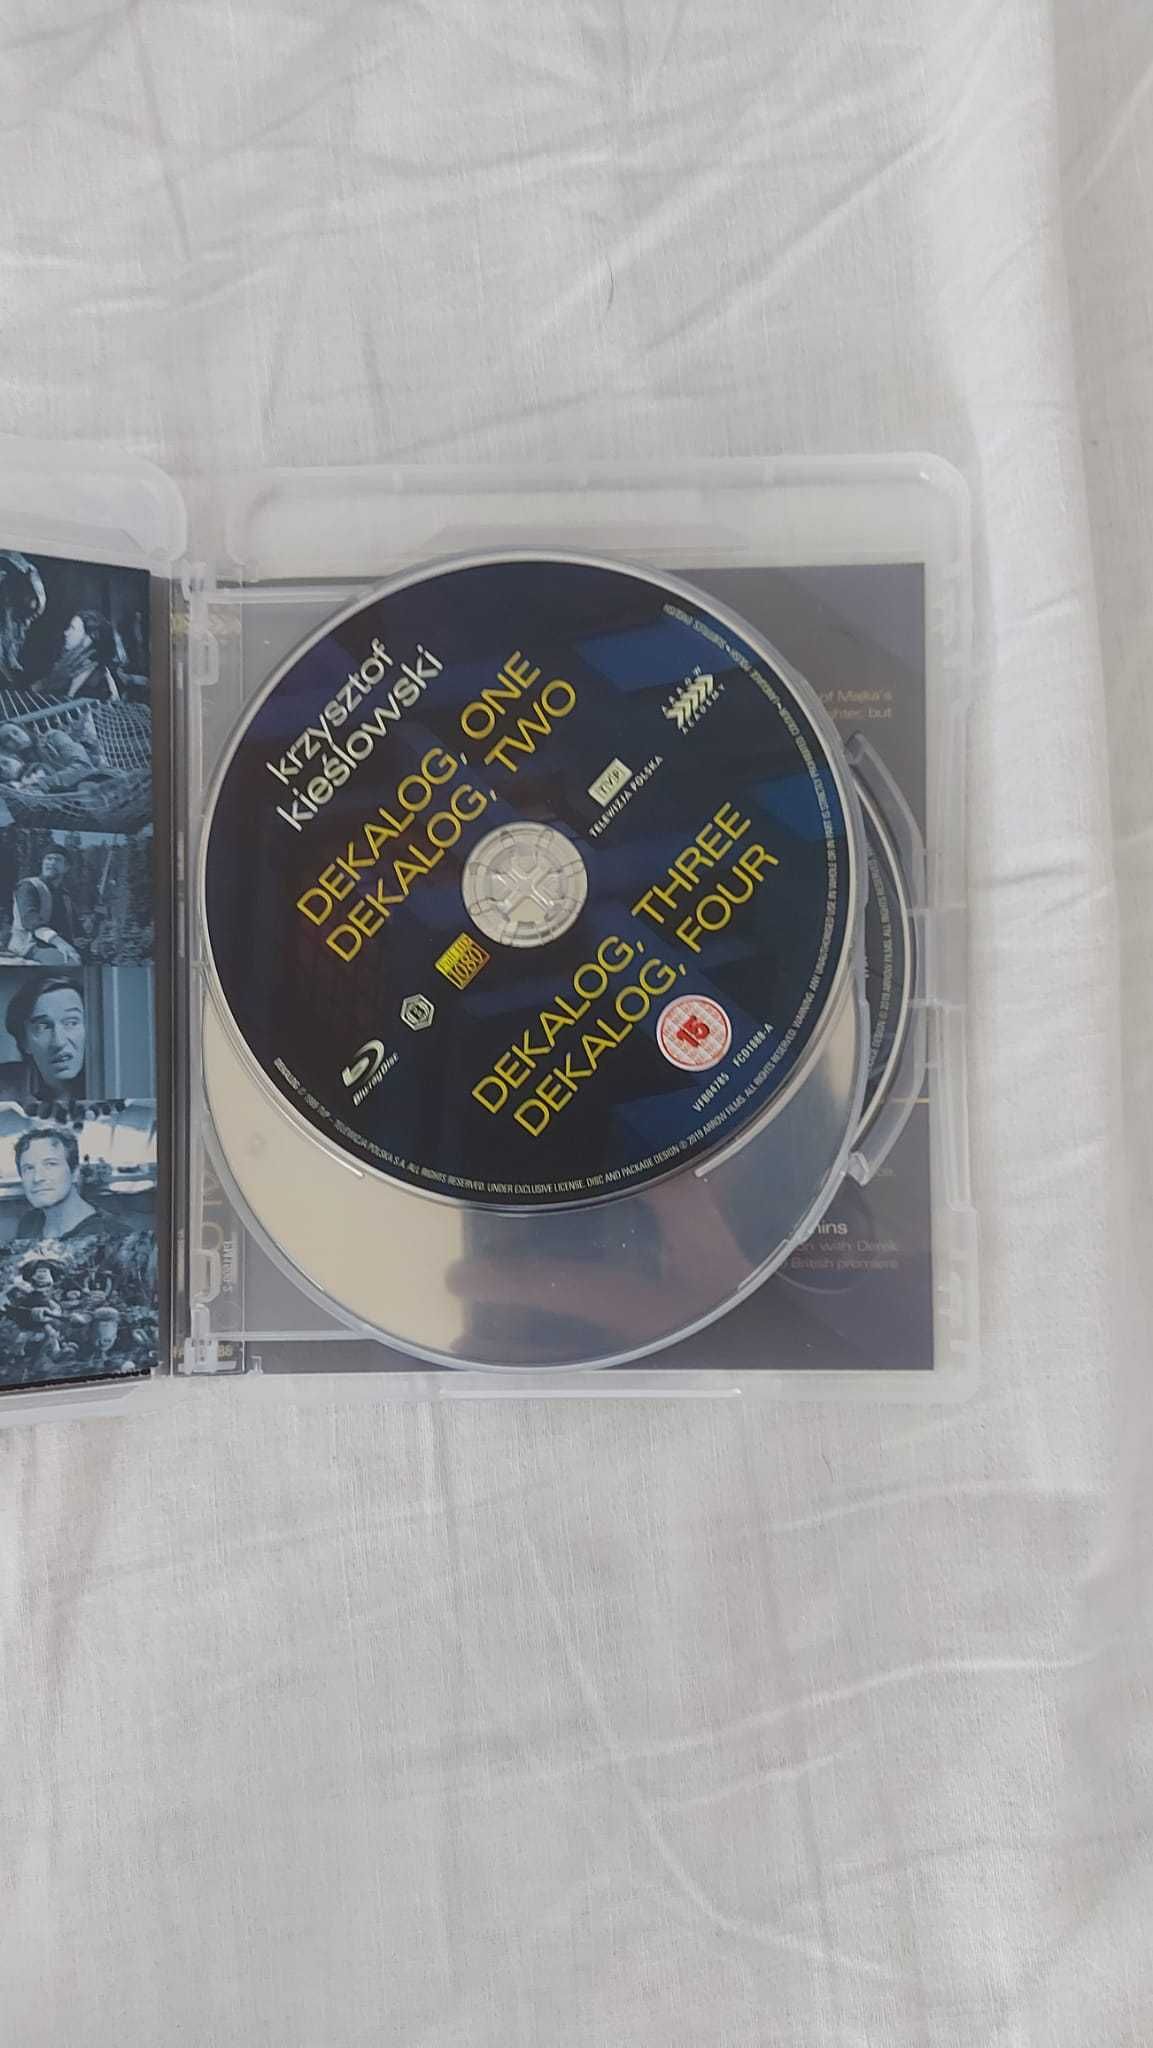 Decalogul - Krzysztof Kieslowski  10 filme de o oră - Blu-ray blu ray